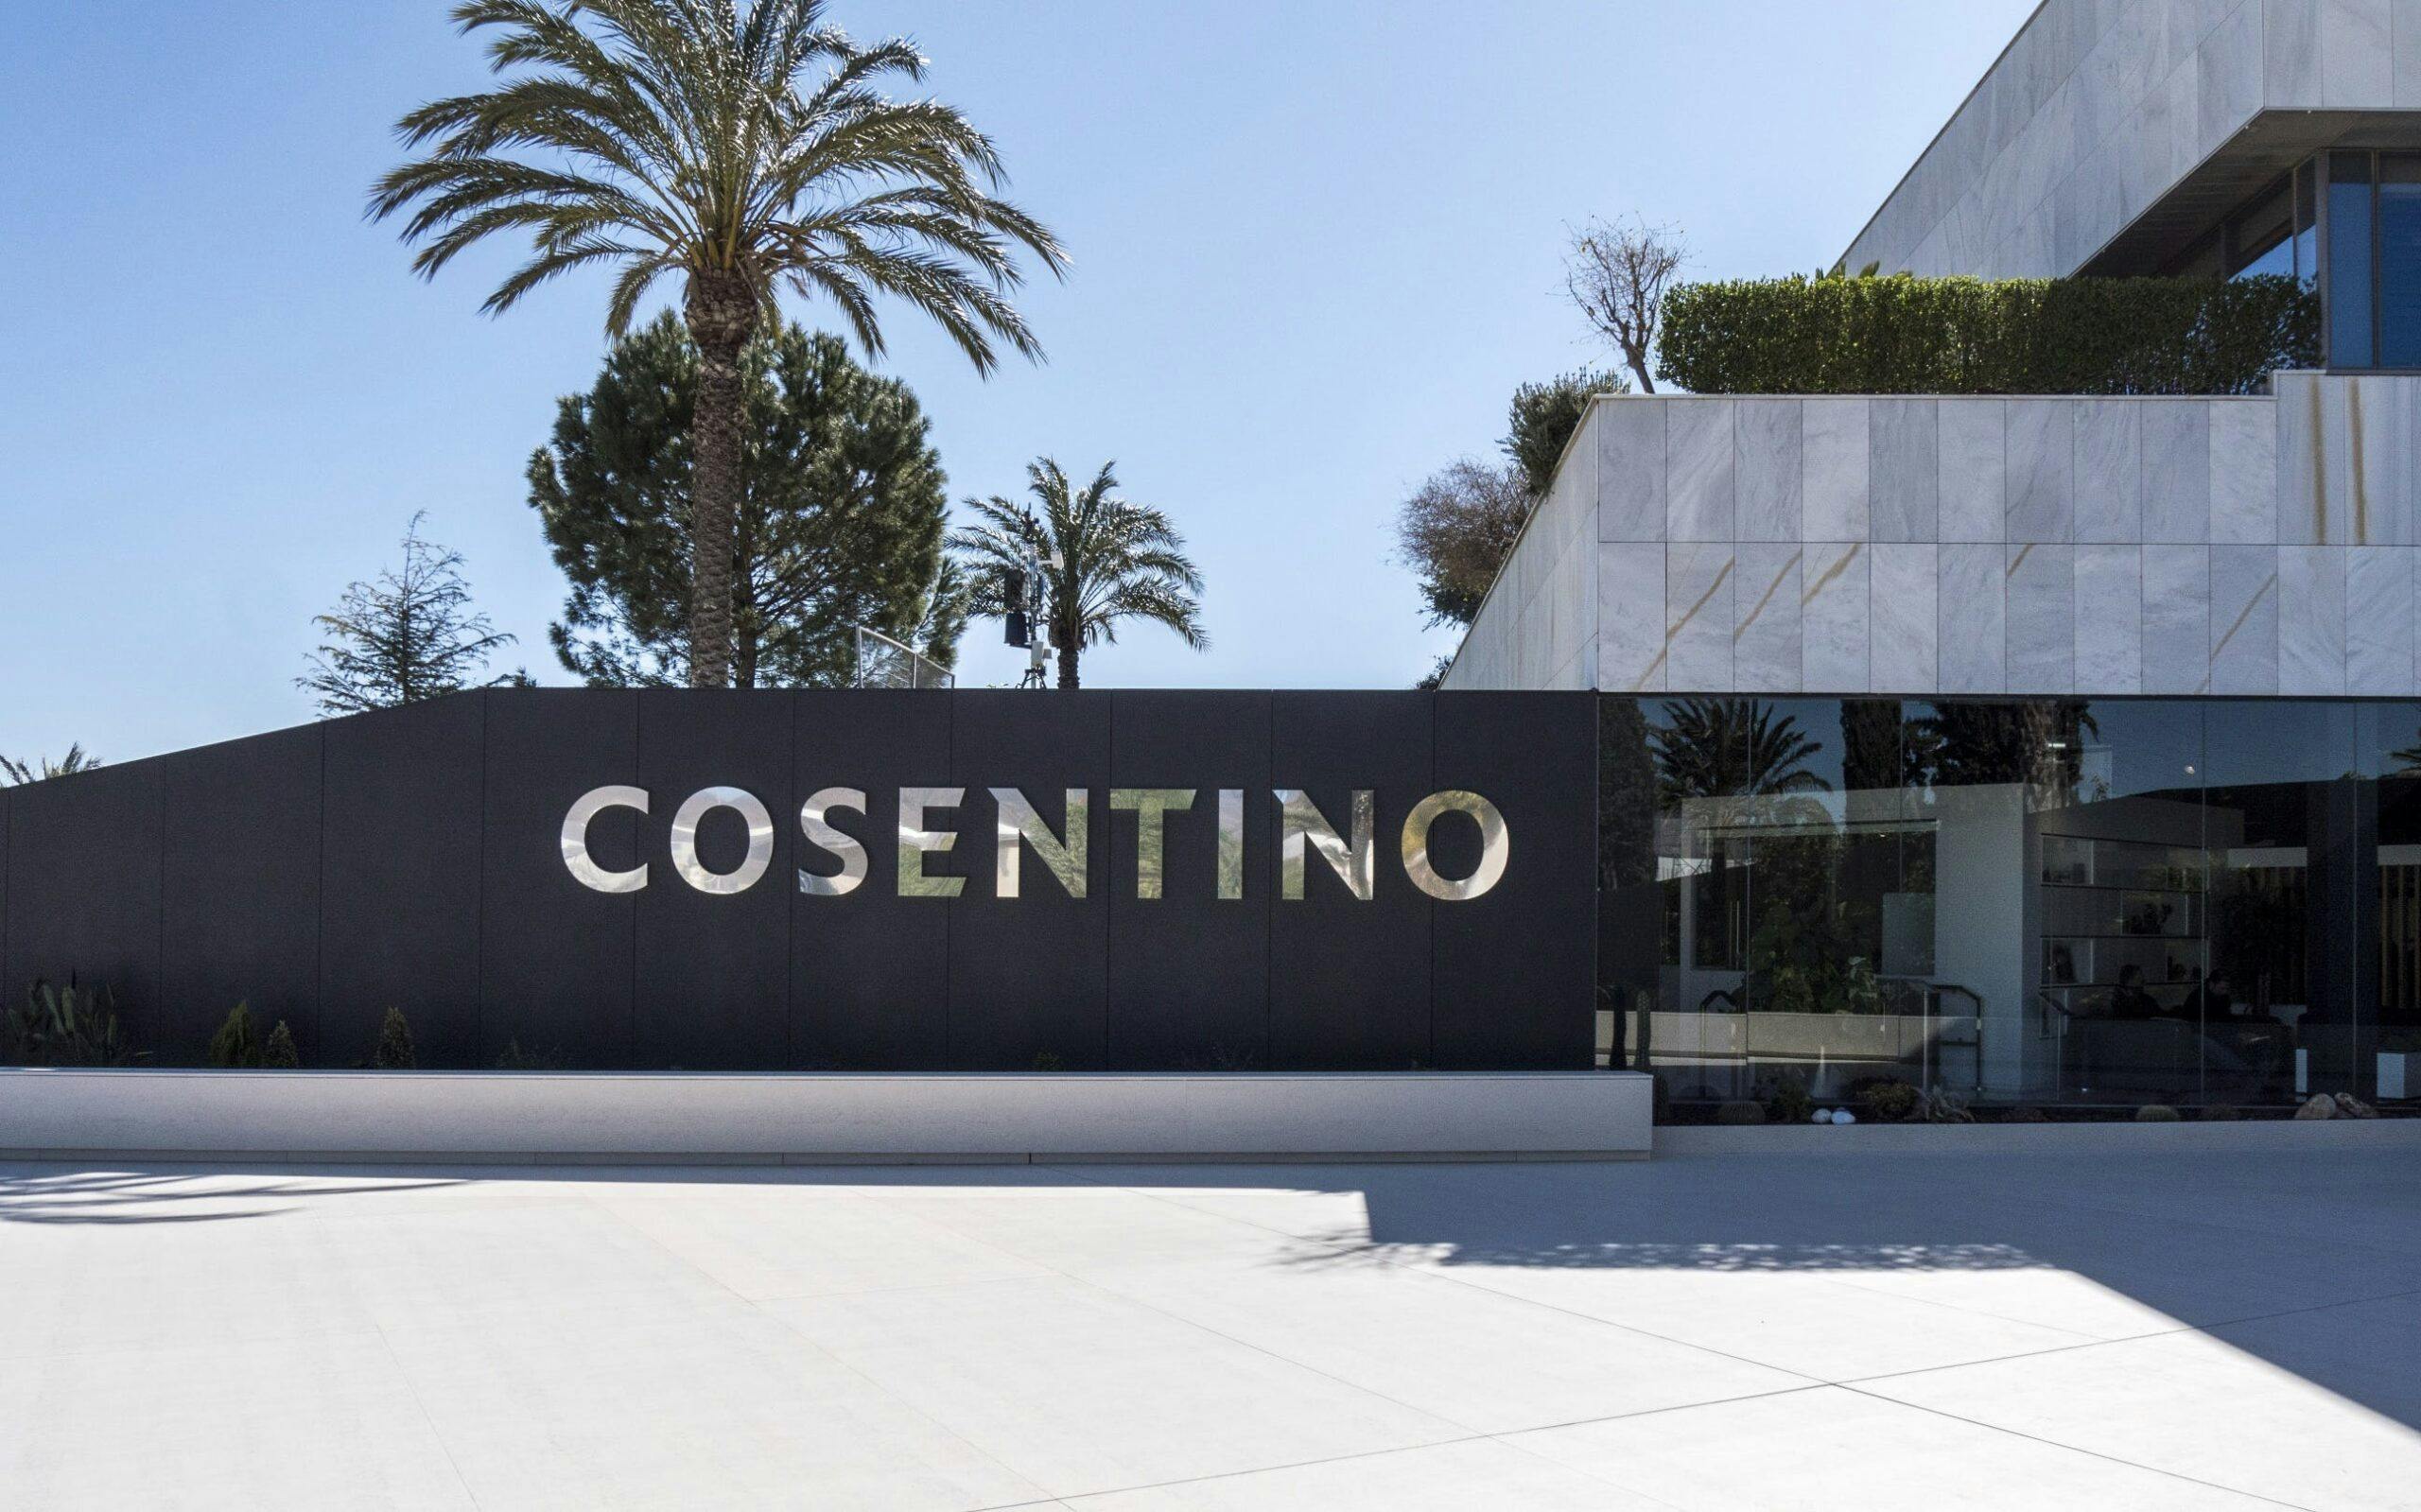 Image 31 of Entrada HQ Cosentino 1 2 3 scaled in Cosentino Group reaches Euro 984.5 million turnover in 2018 - Cosentino